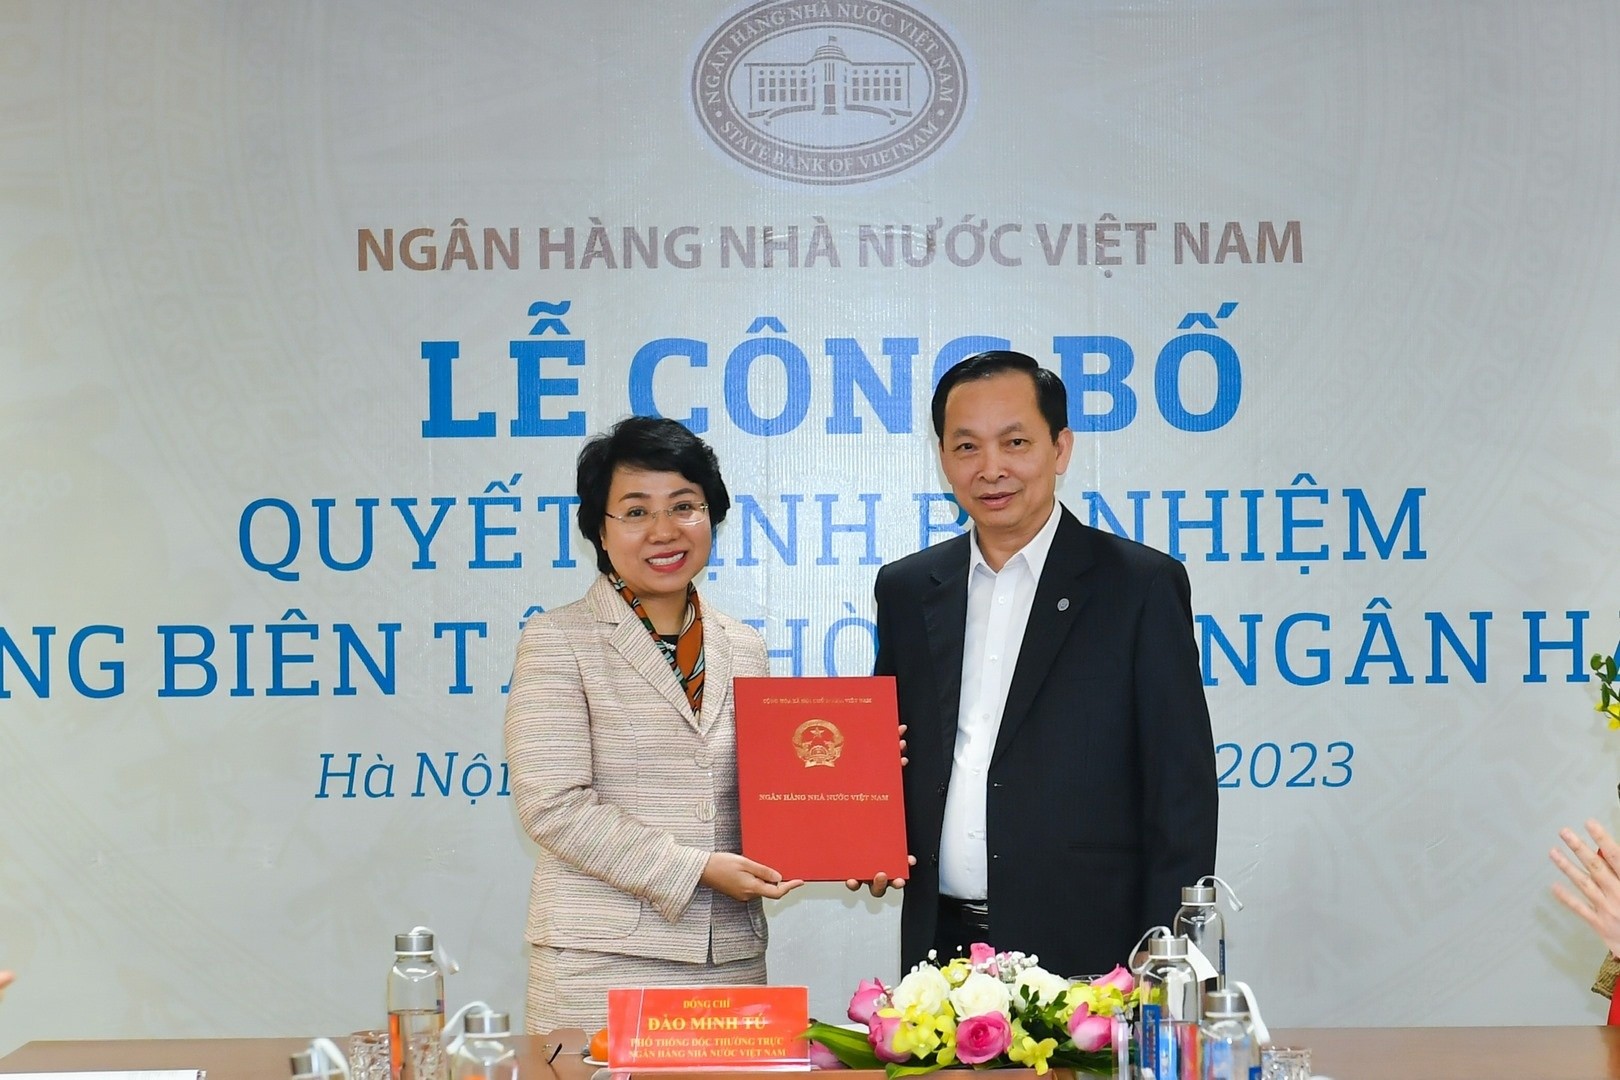 Bà Hoàng Thanh Nhàn được bổ nhiệm Tổng Biên tập Thời báo Ngân hàng